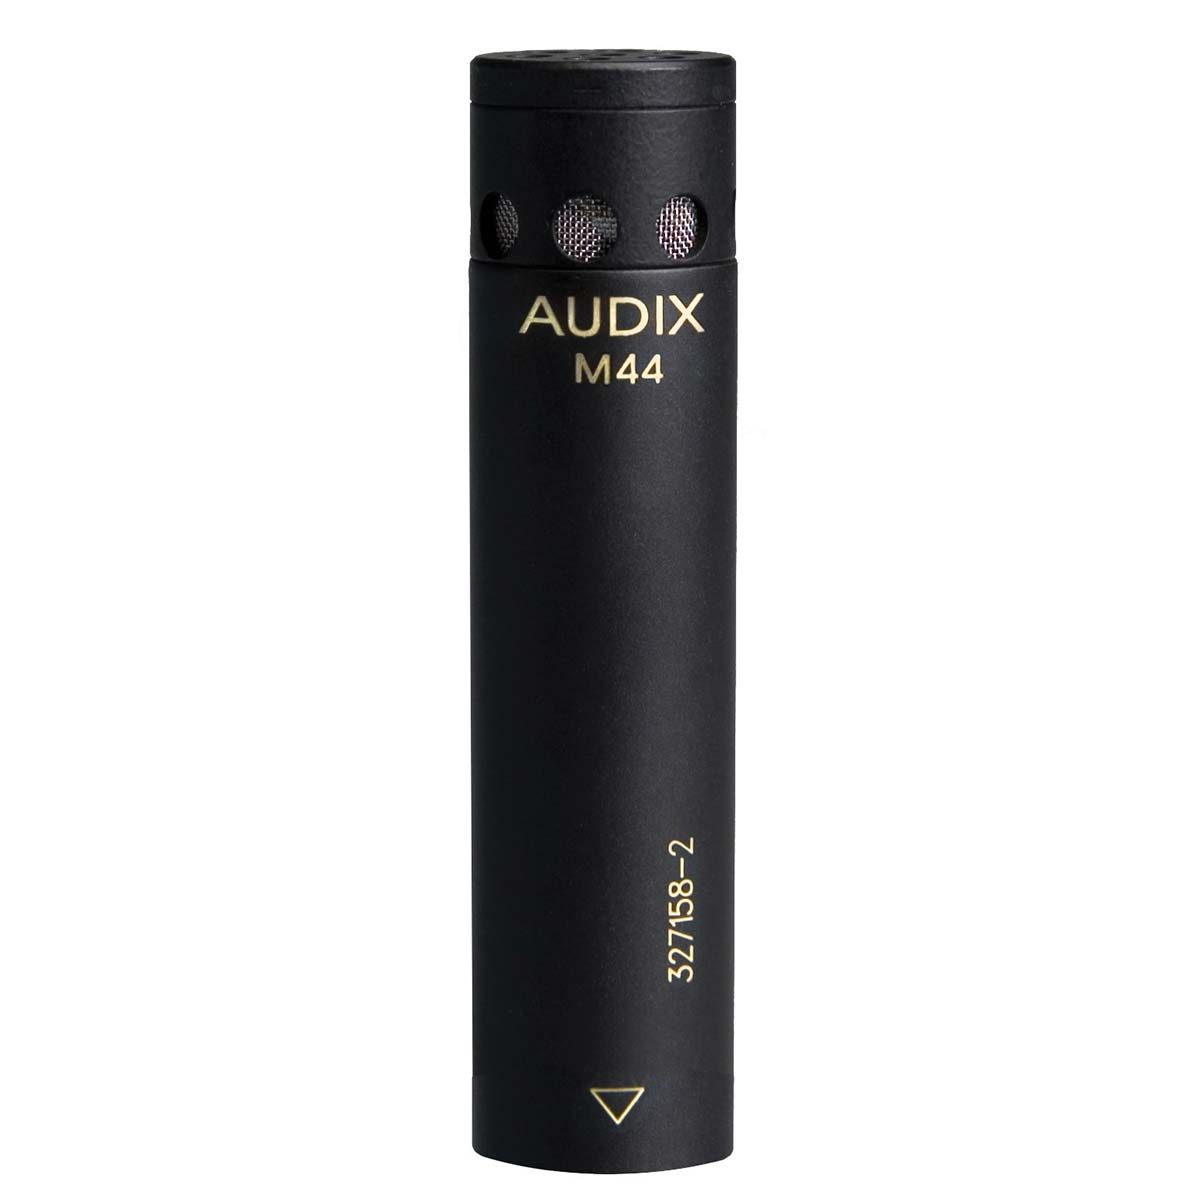 Micrófono condensador cardioide Audix M44